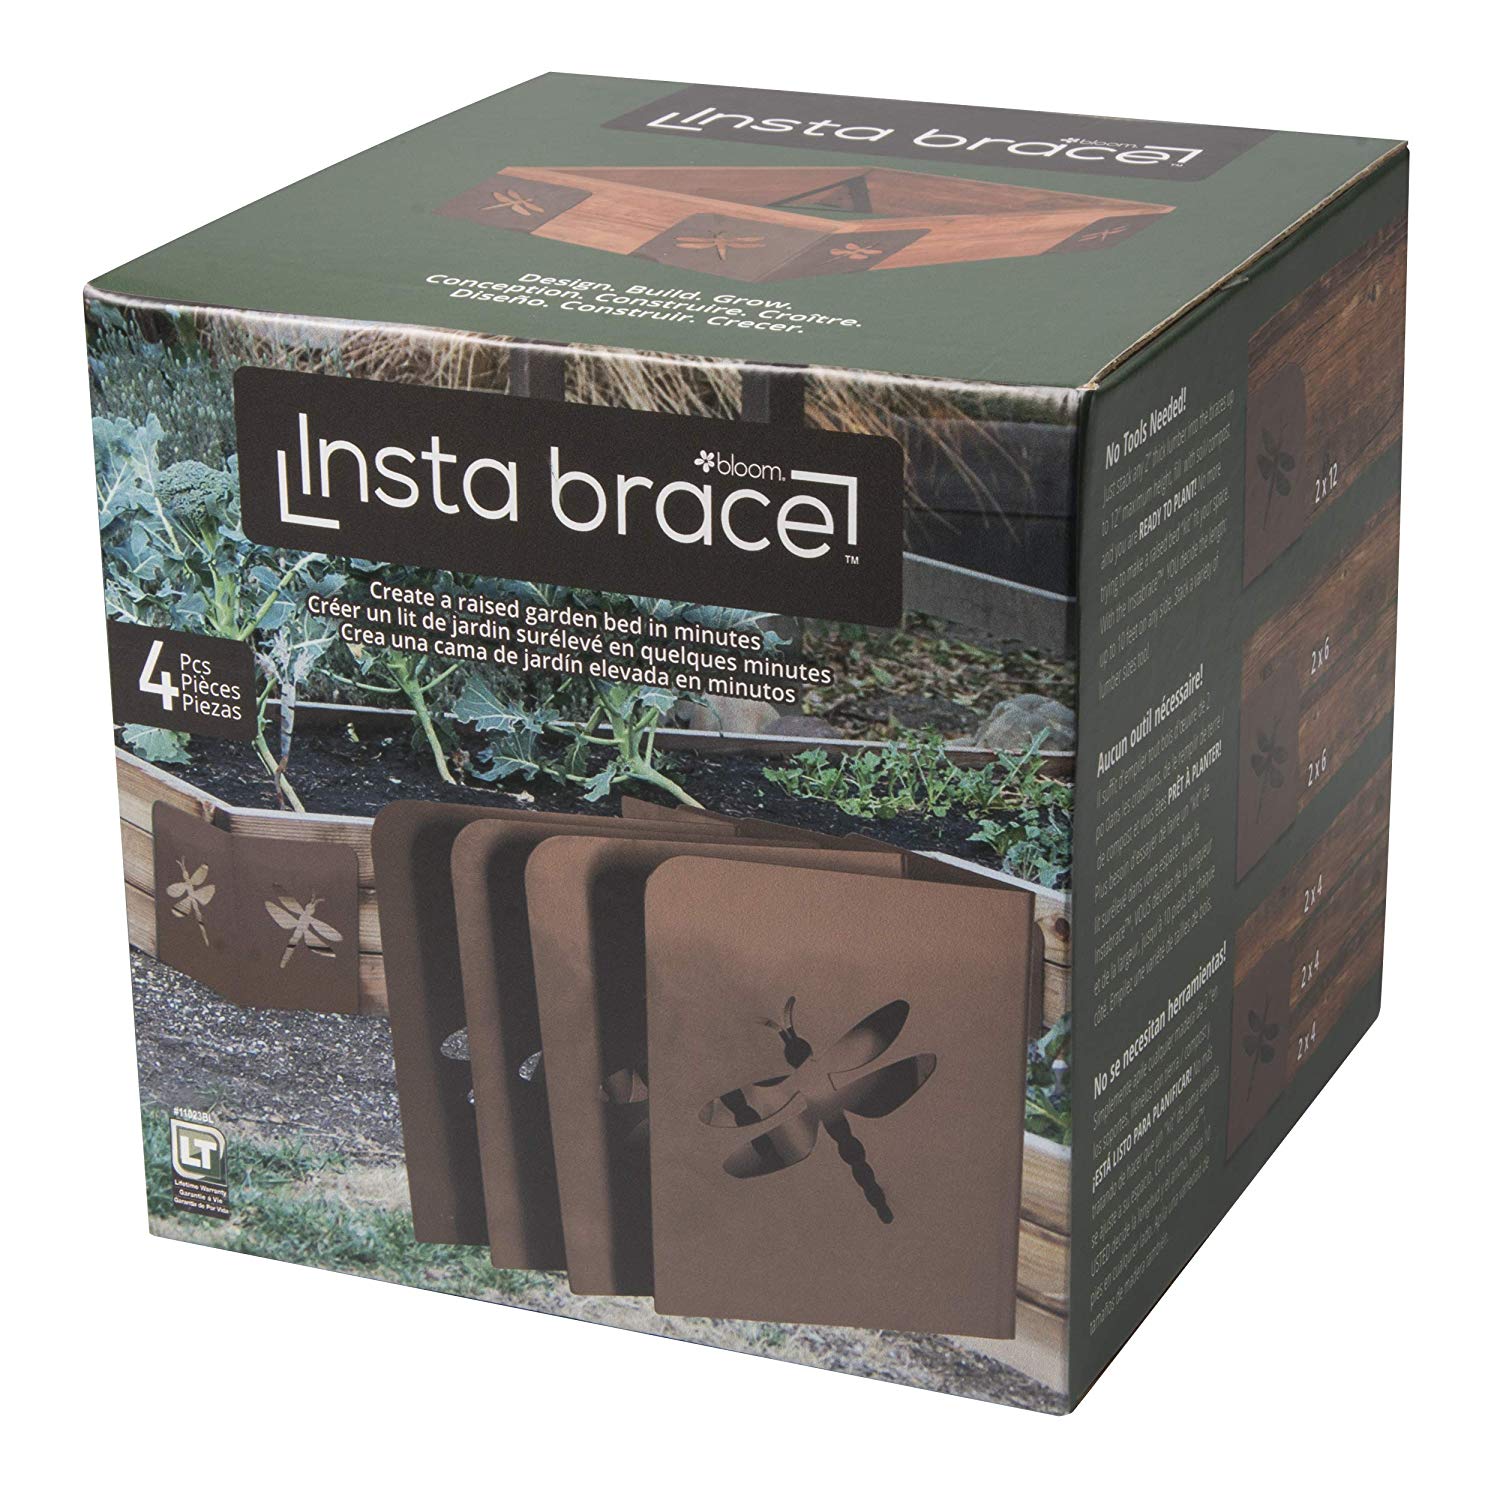 Bloom InstaBrace Steel Raised Garden Bed Brace w/ Dragonfly Cutout (4 Braces) 34613110238 | eBay